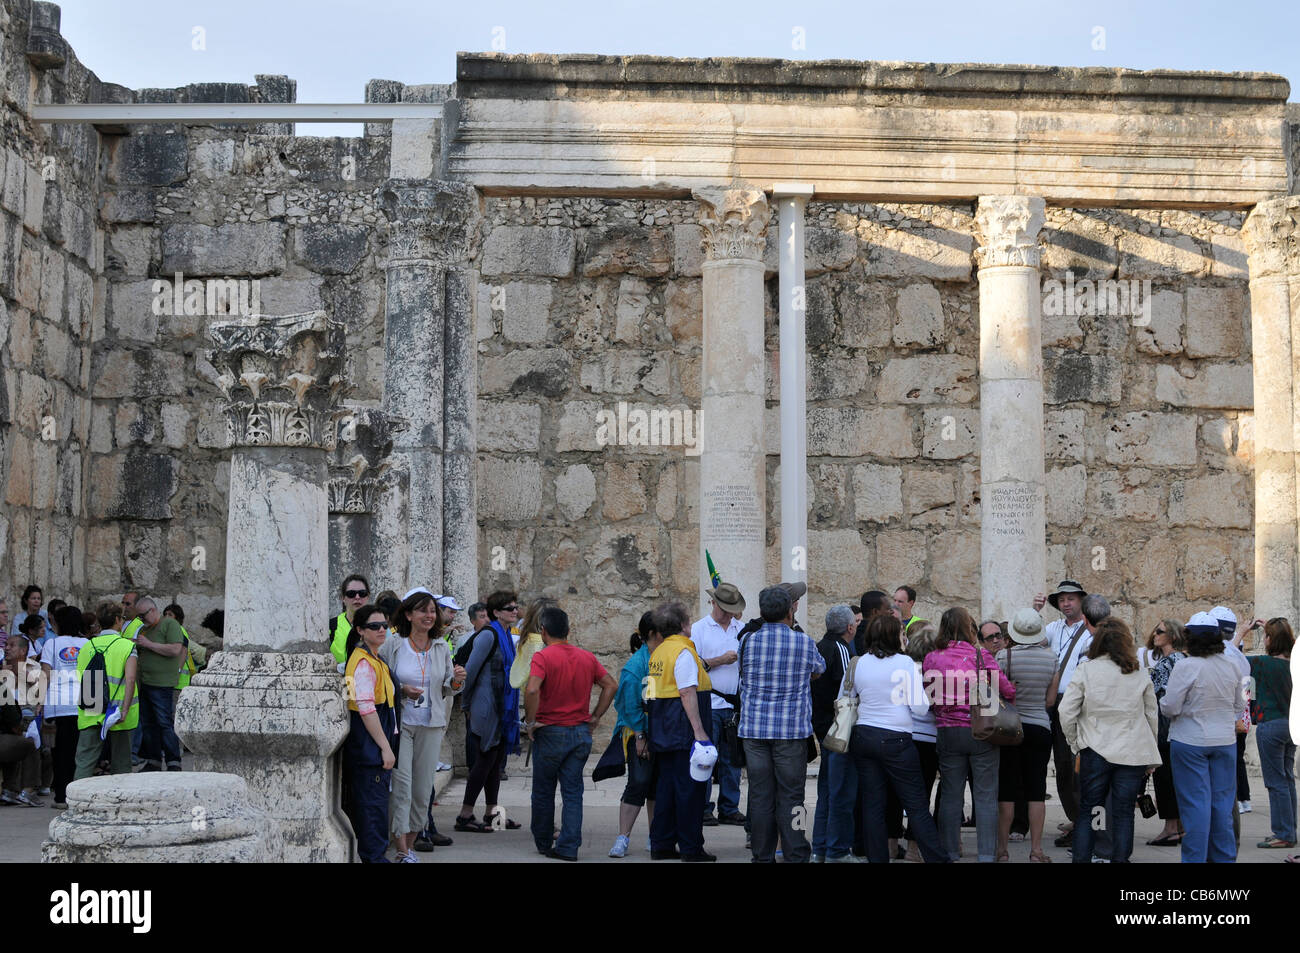 Les touristes à l'intérieur de ruines de l'ancienne synagogue du 4ème siècle, Capernaüm, Galilée, Israël, Asie, Moyen Orient Banque D'Images